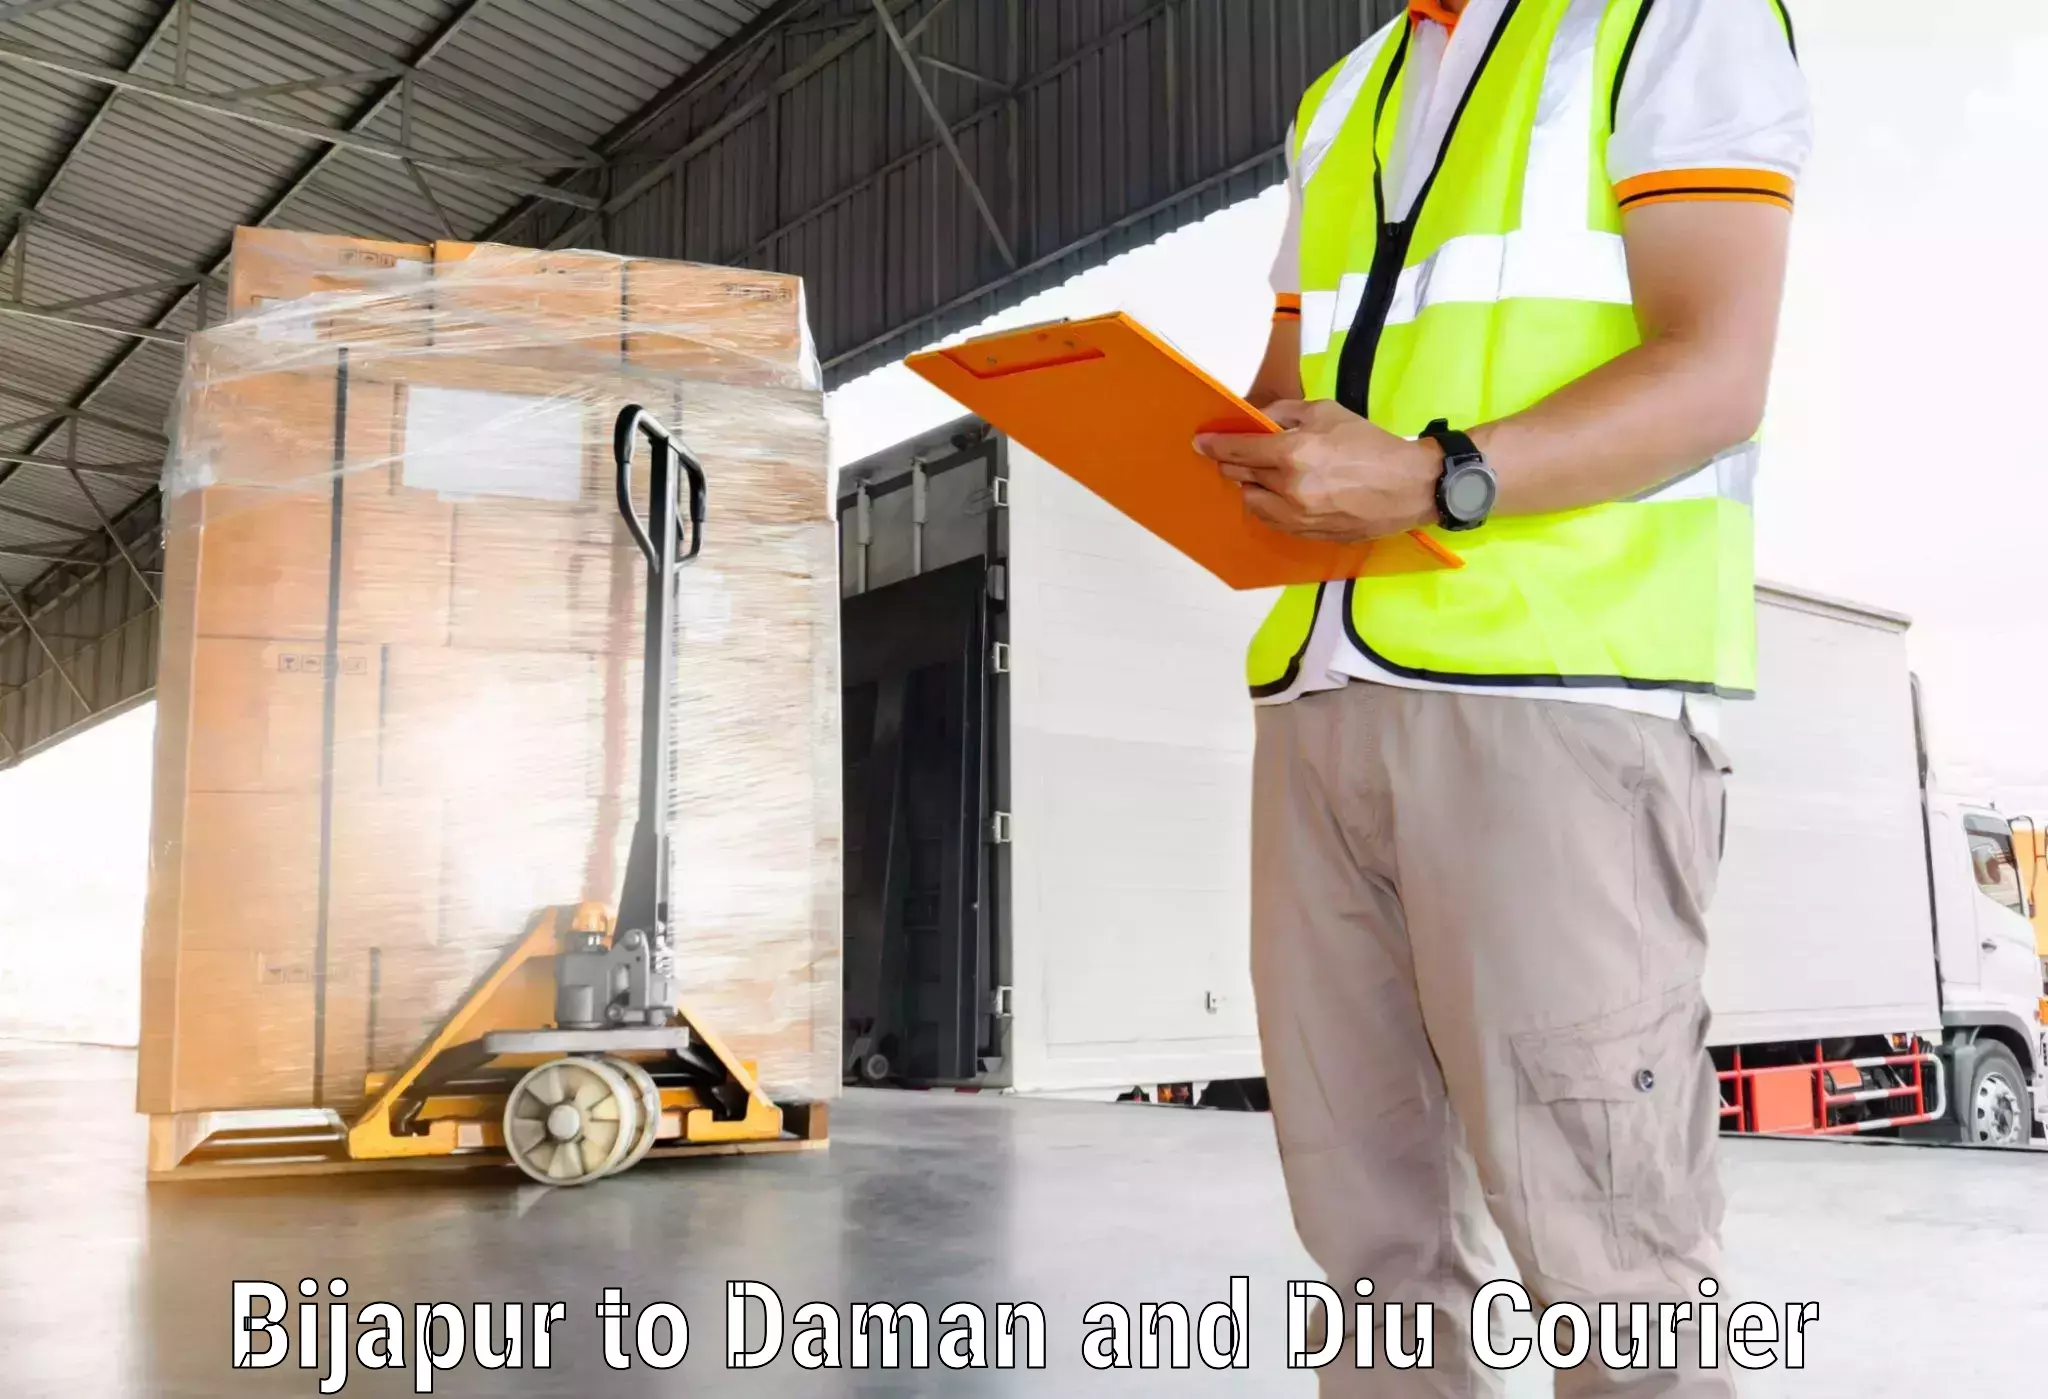 Comprehensive freight services Bijapur to Daman and Diu